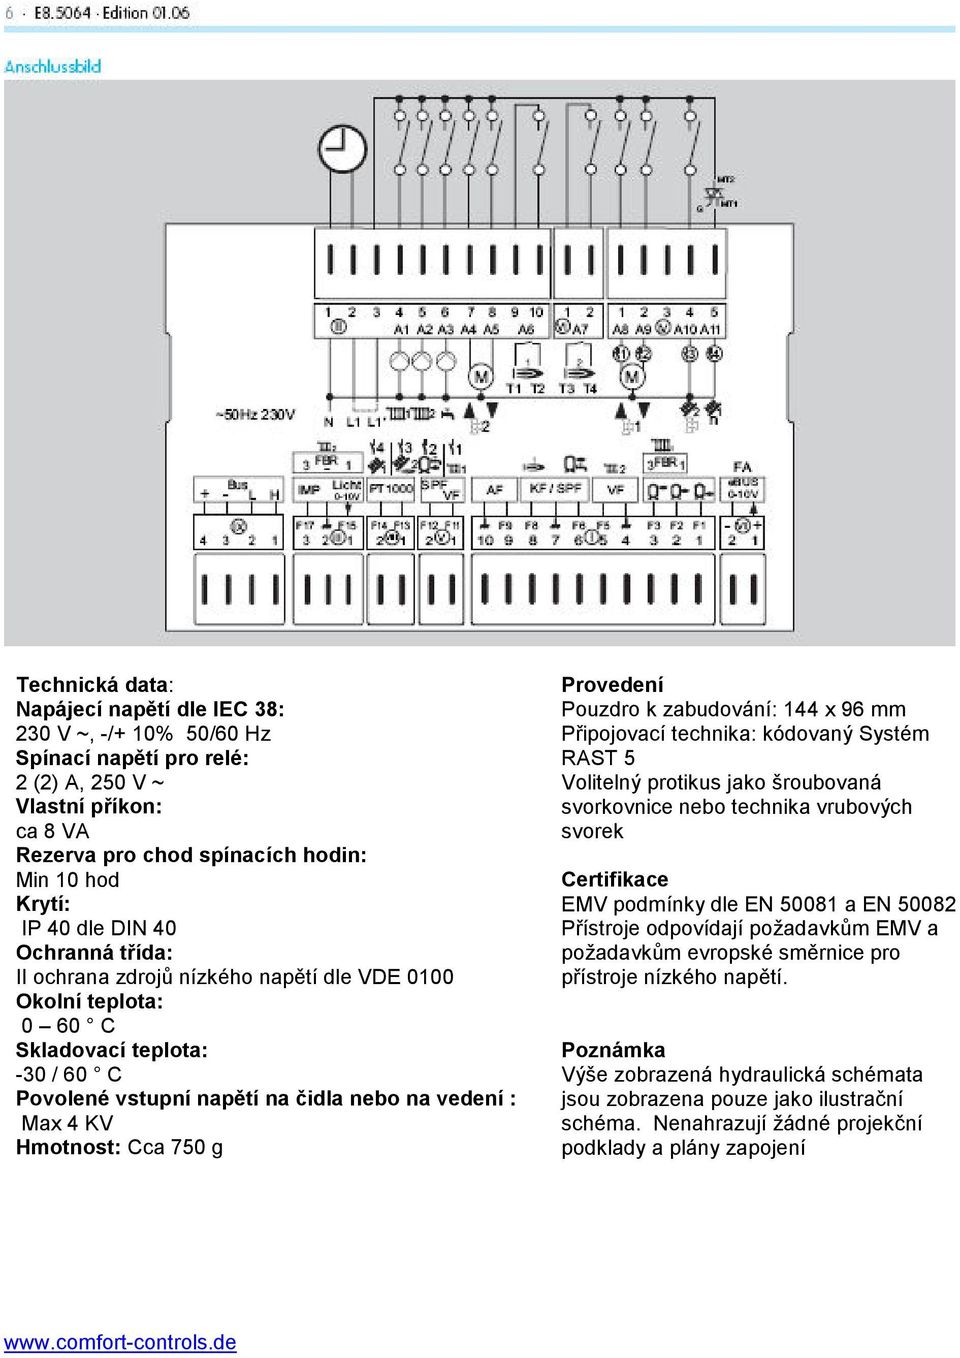 g Provedení Pouzdro k zabudování: 144 x 96 mm Připojovací technika: kódovaný Systém RAST 5 Volitelný protikus jako šroubovaná svorkovnice nebo technika vrubových svorek Certifikace EMV podmínky dle